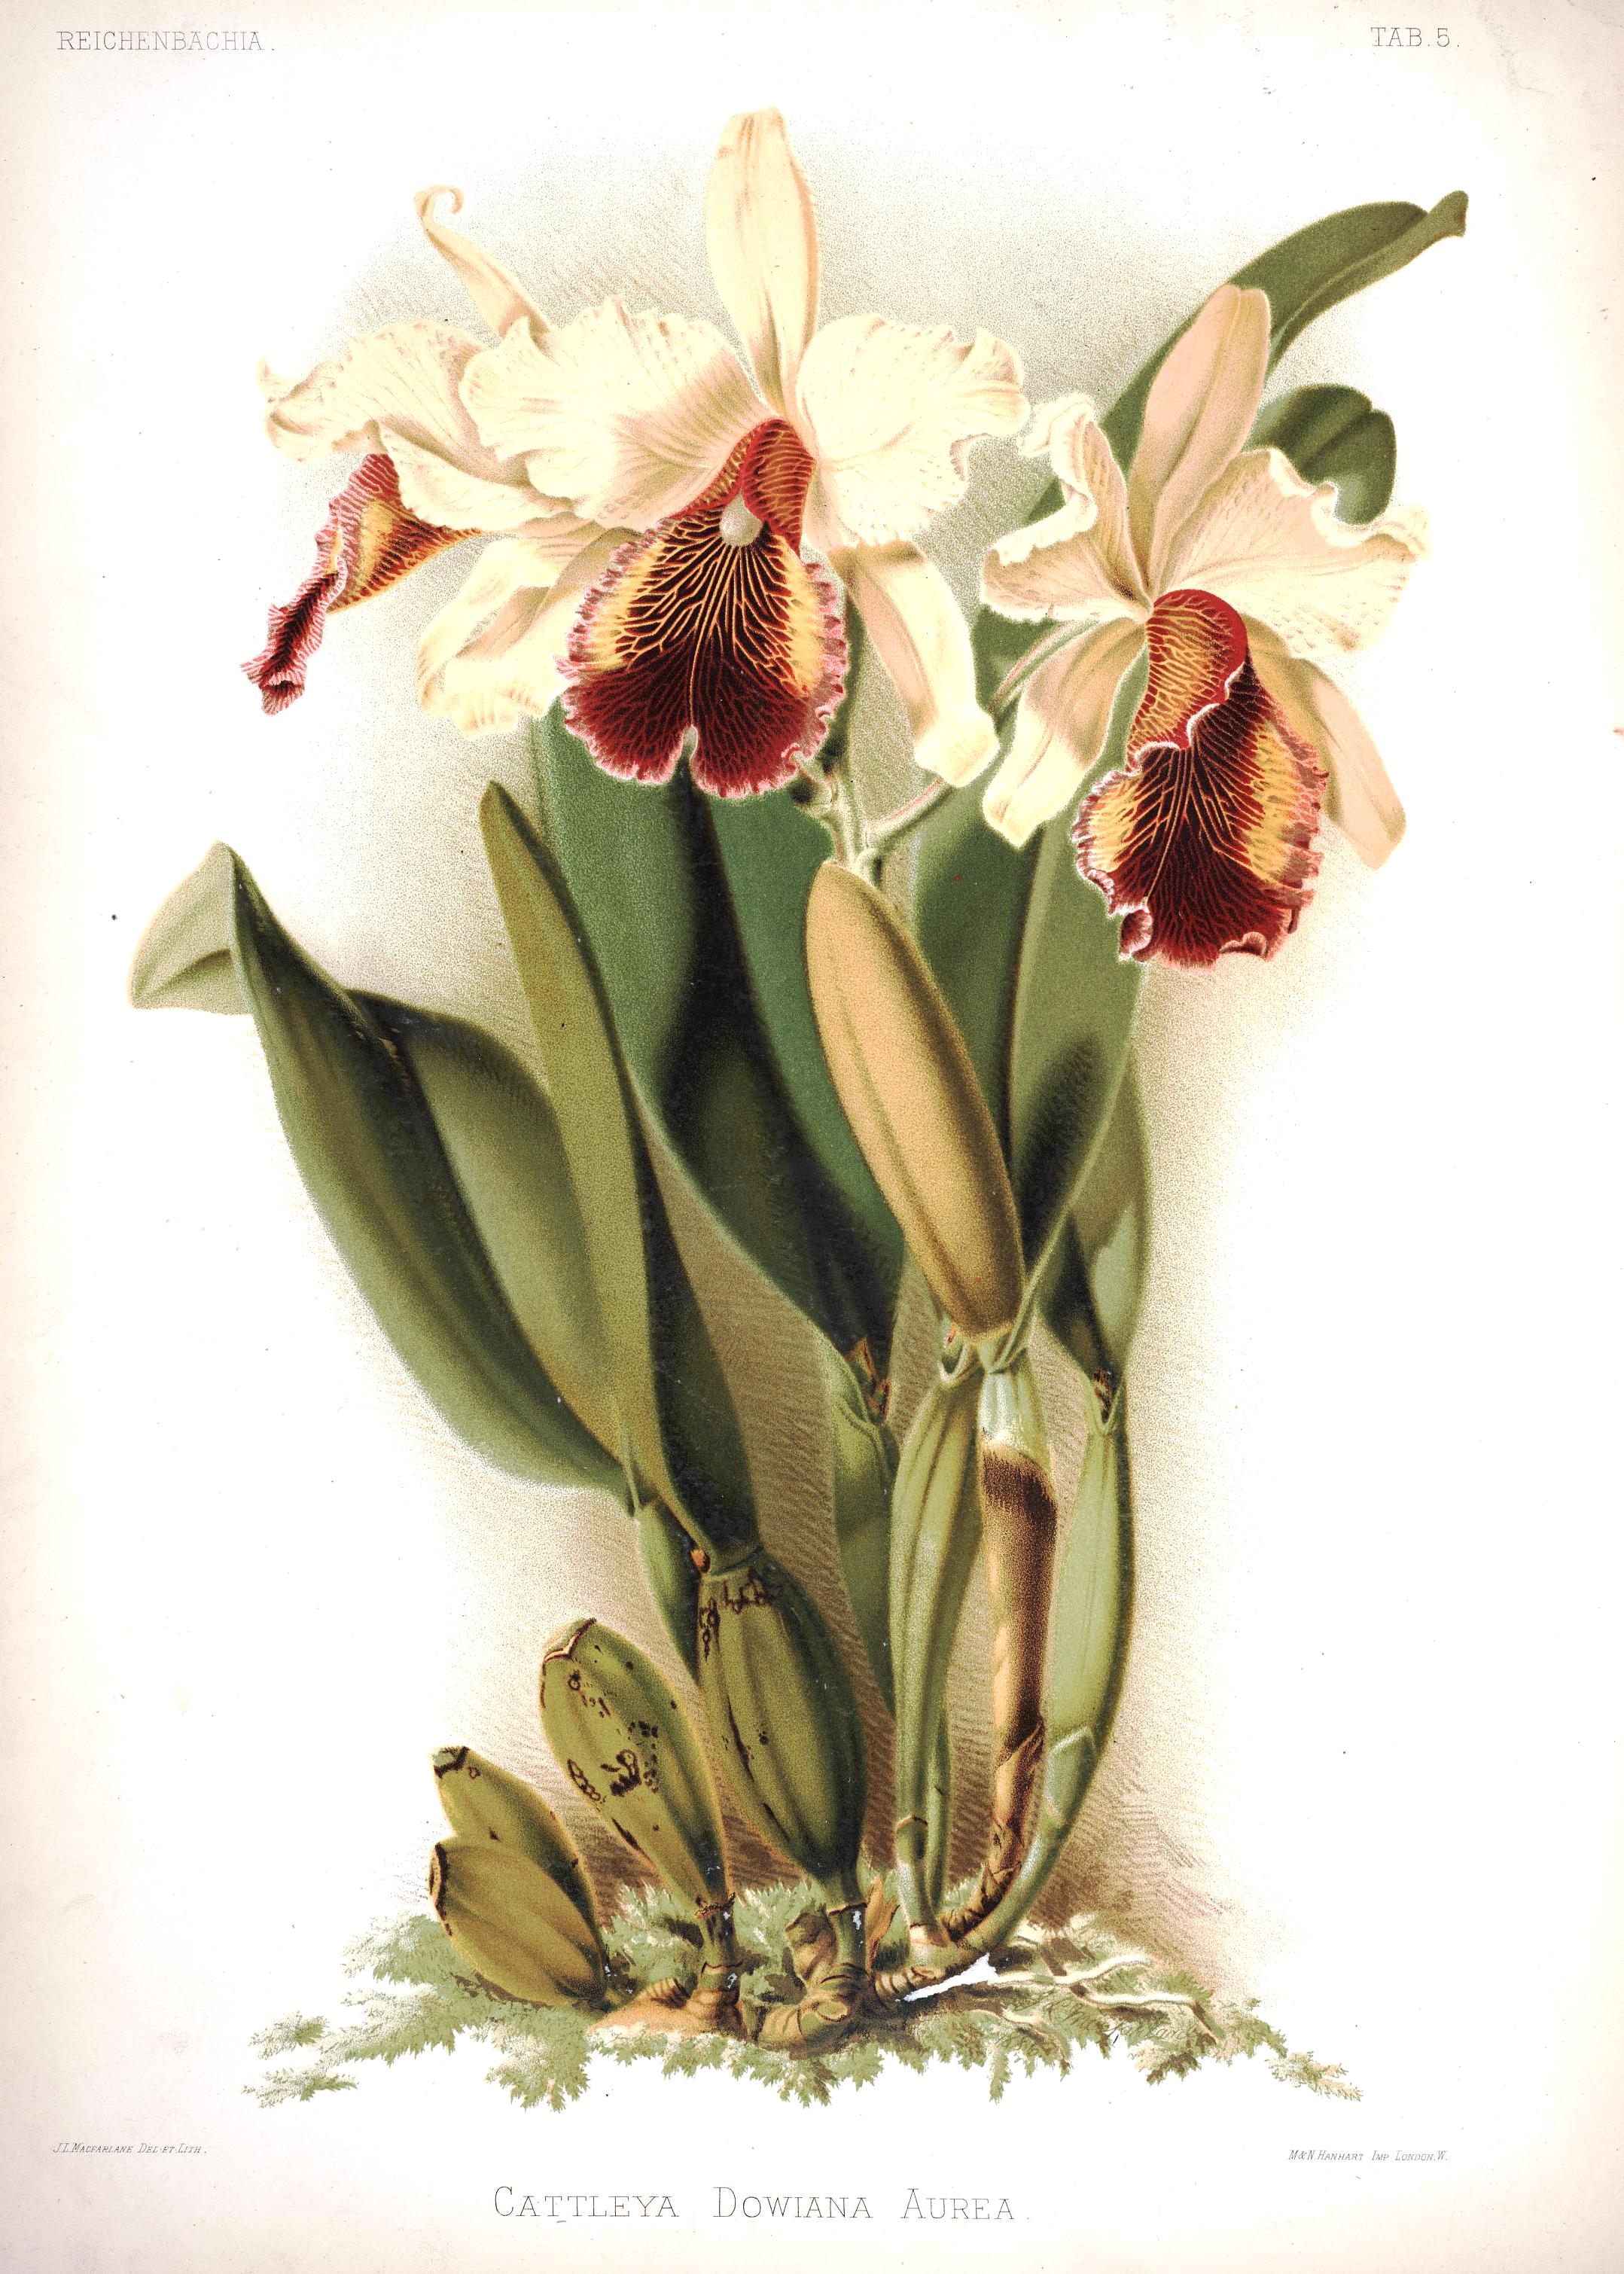 aurea reichenbachia